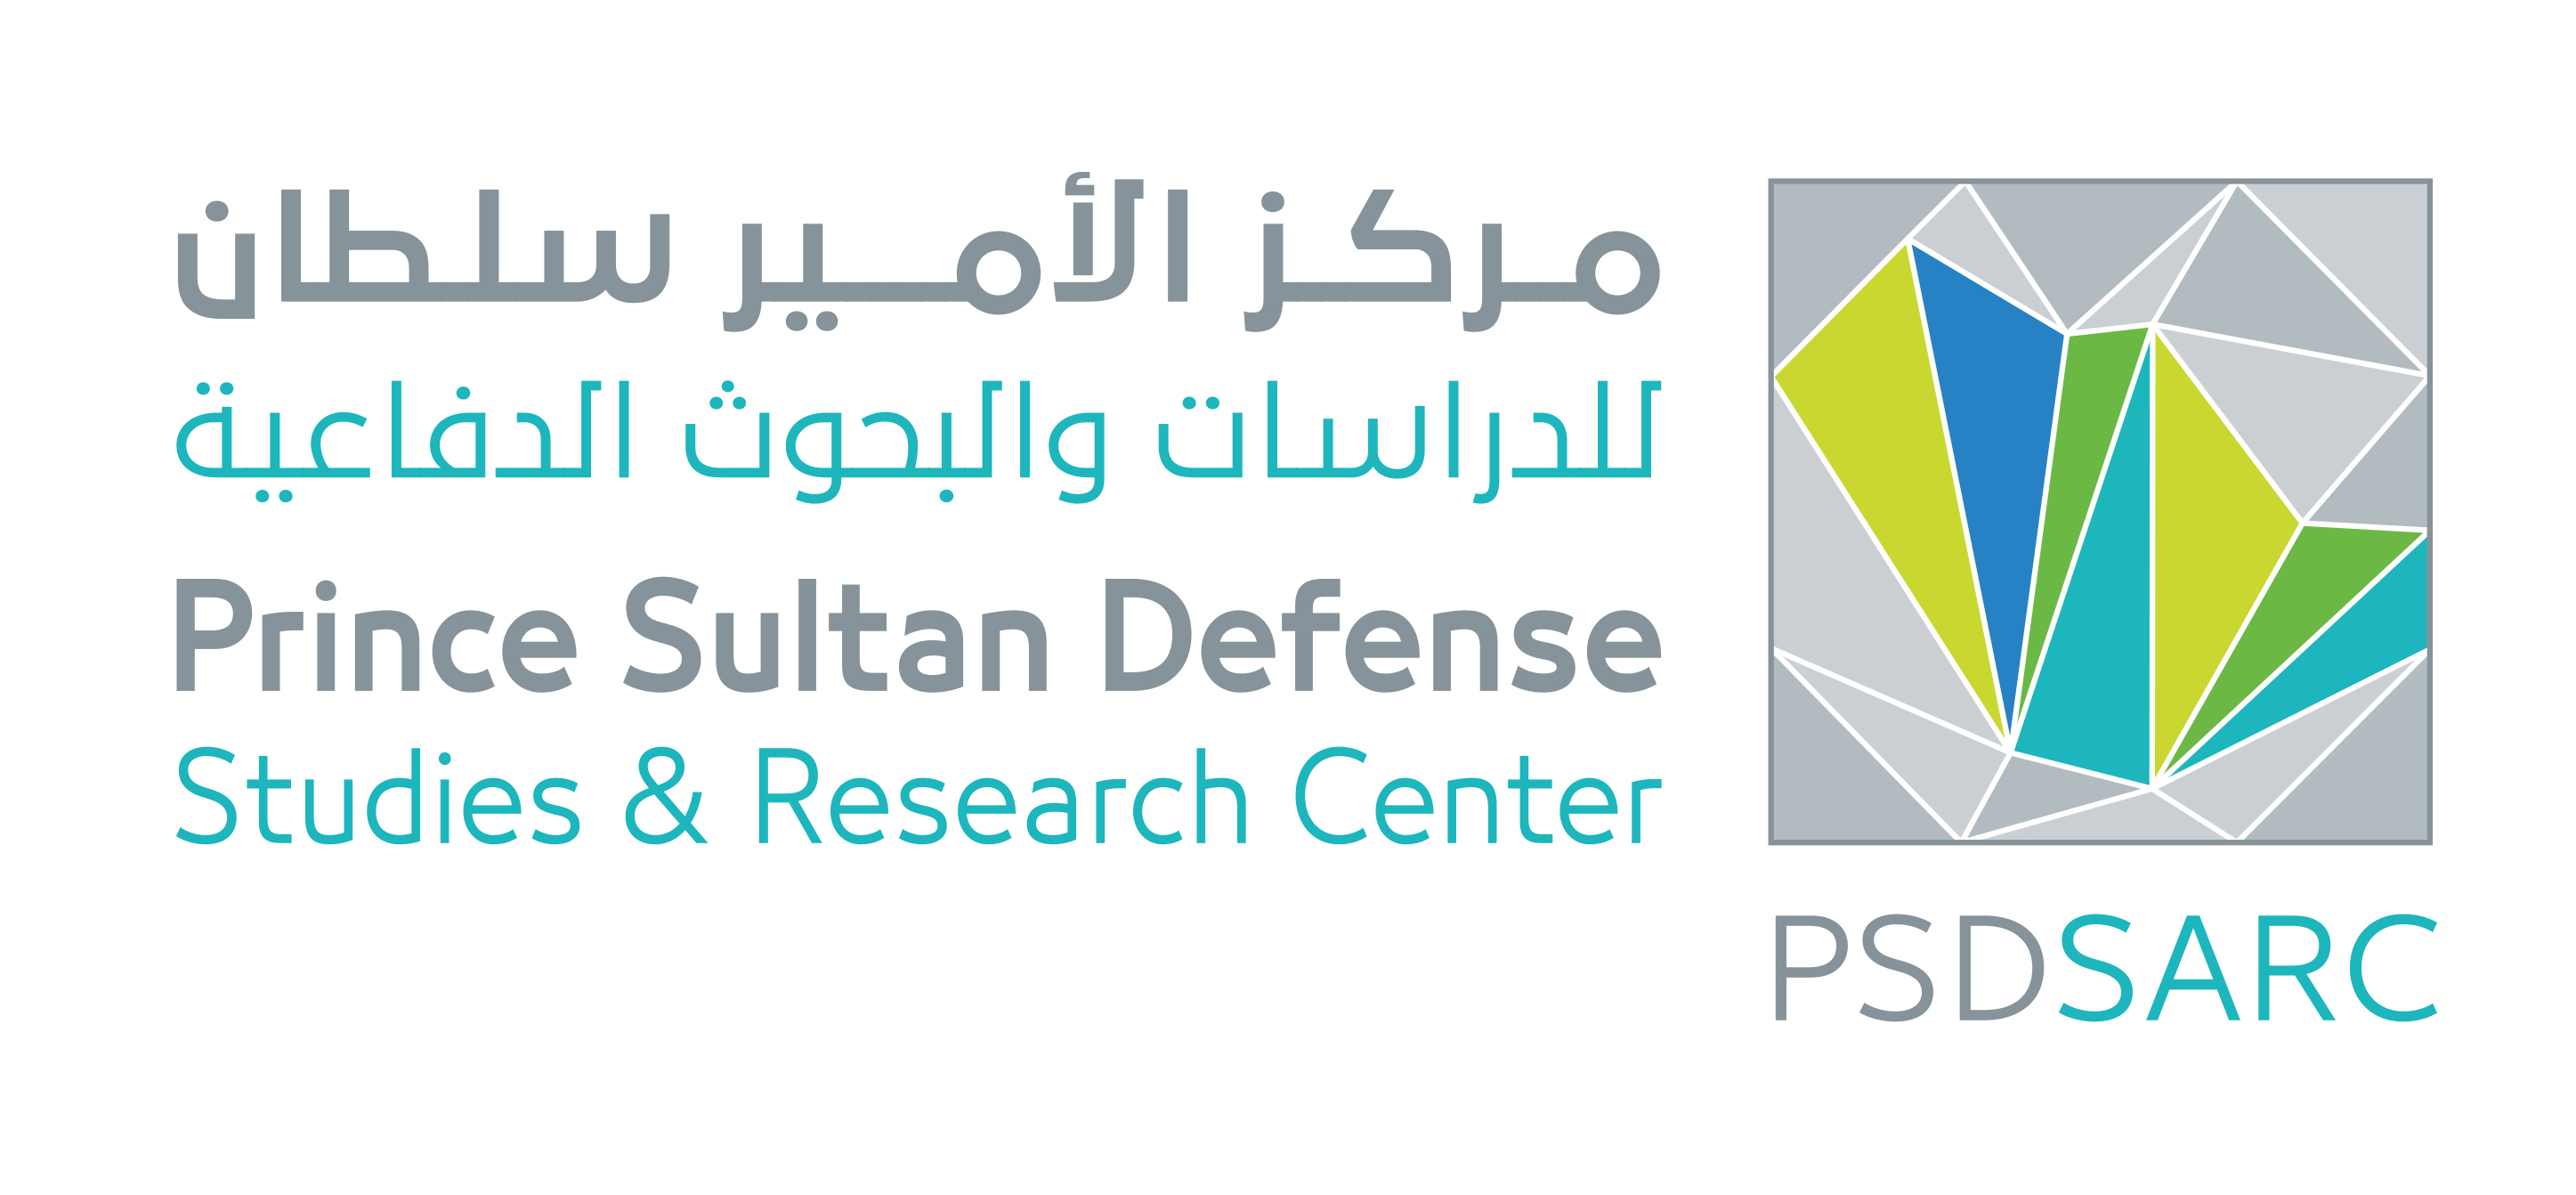  مركز الأمير سلطان للدراسات والبحوث الدفاعية يعلن عن فتح التسجيل في برنامج التدريب التعاوني